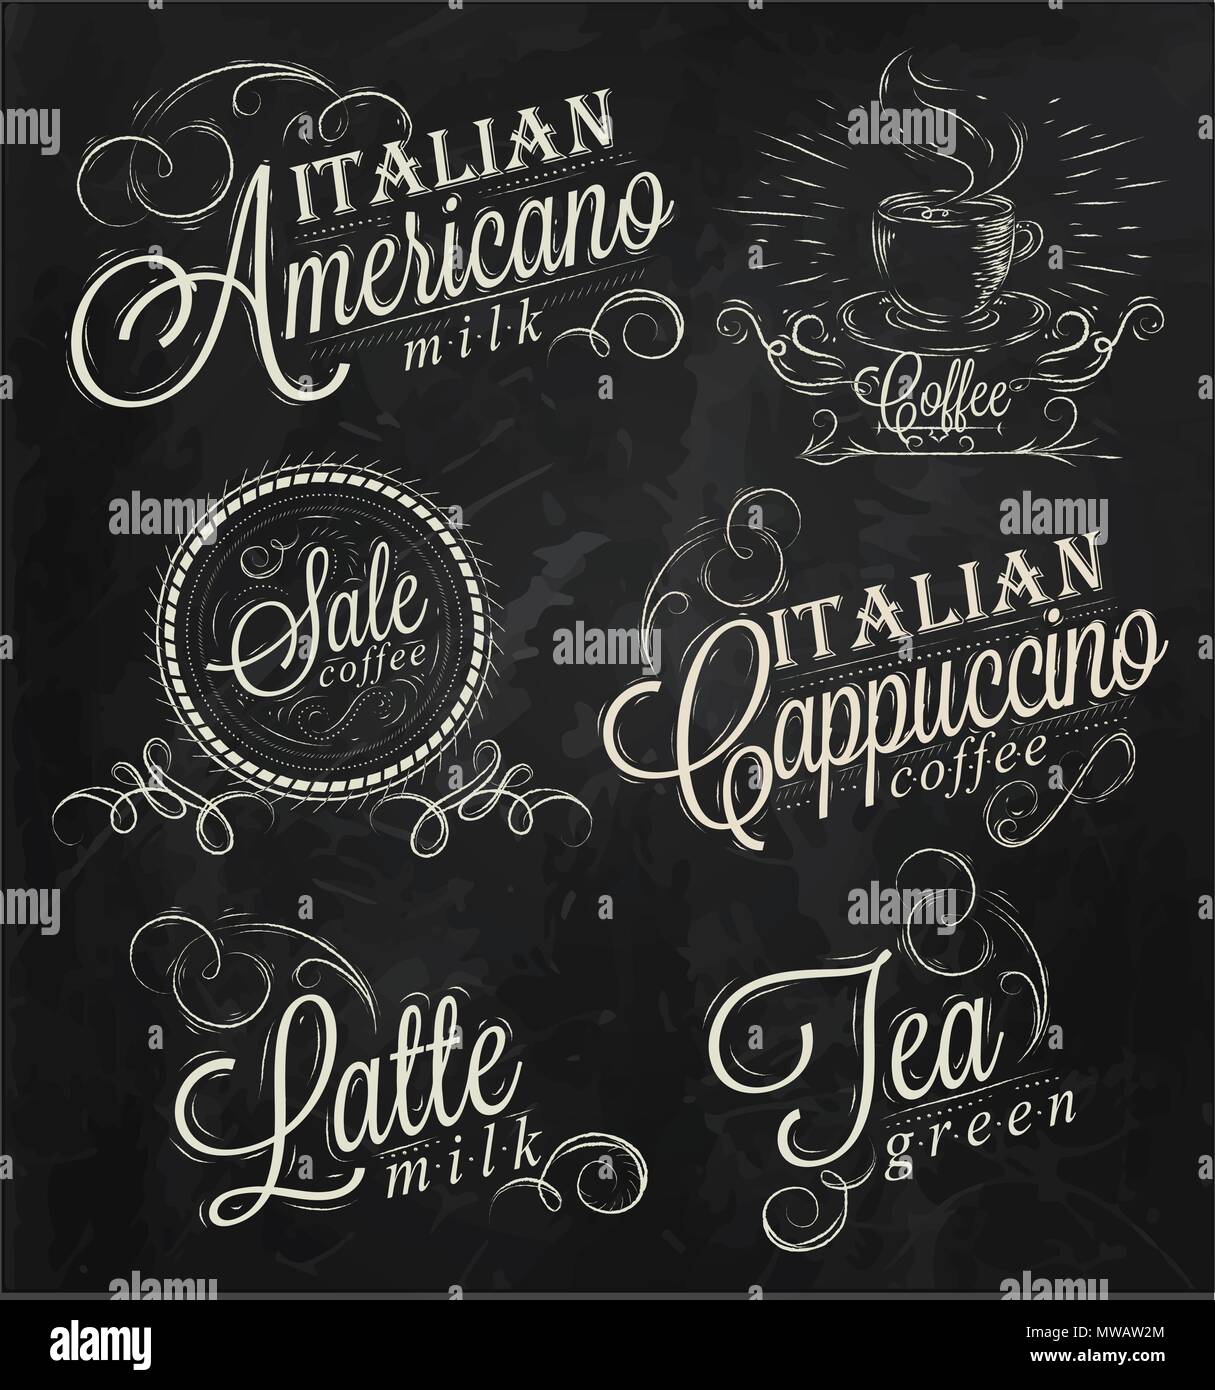 Namen von Kaffeespezialitäten Espresso, Latte, stilisierte Inschriften mit Kreide auf einer Tafel Stock Vektor